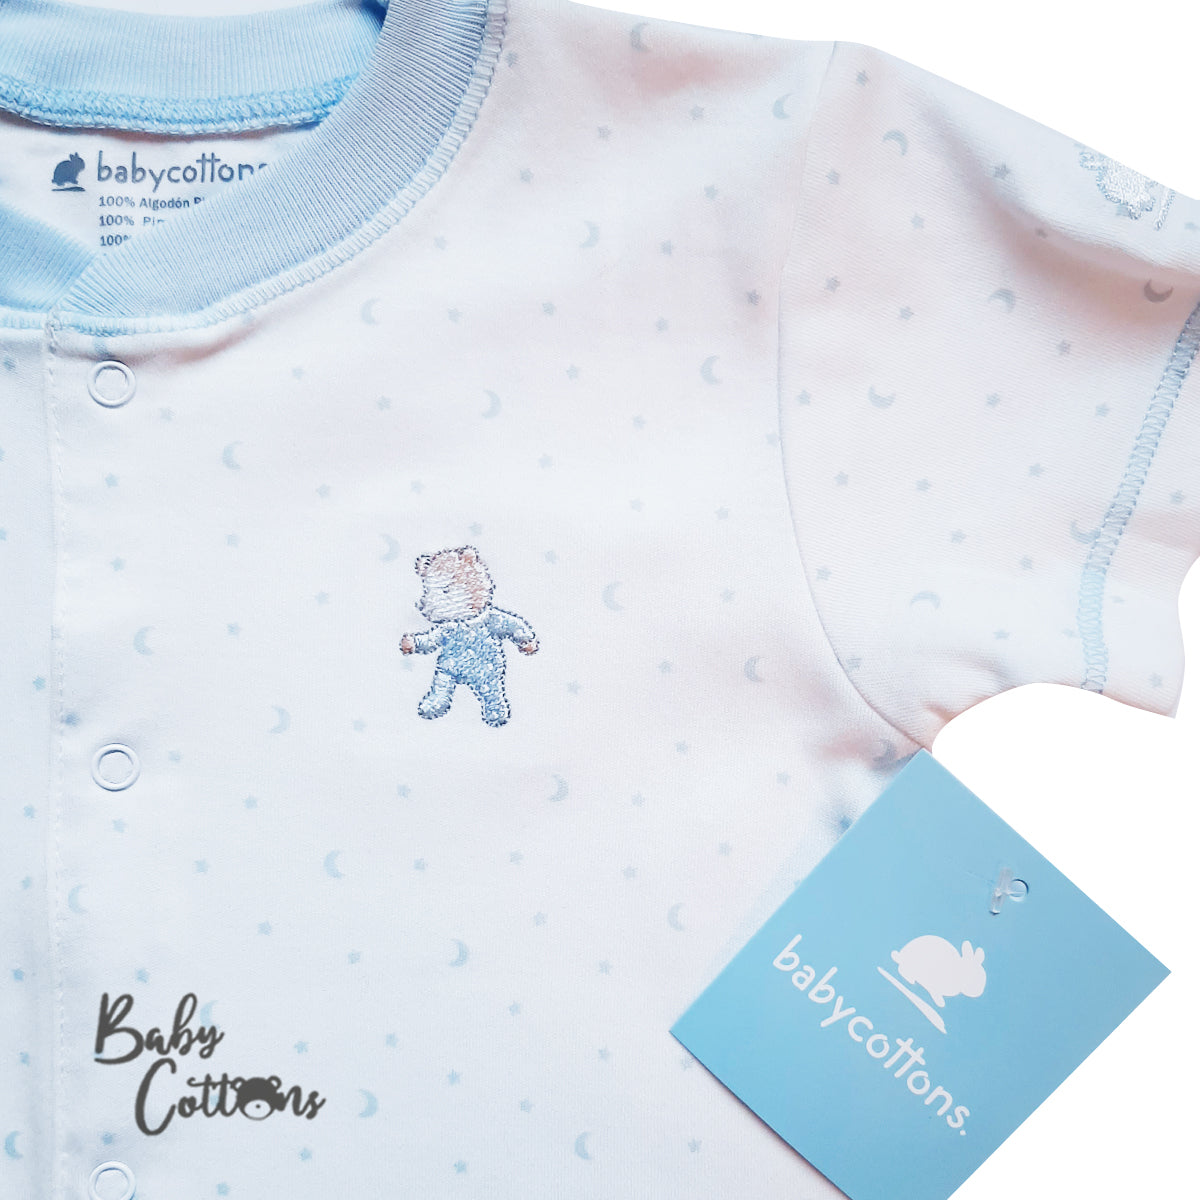 Pijama Babycottons Paticorto Dulce Sueño Blanco Azul Claro